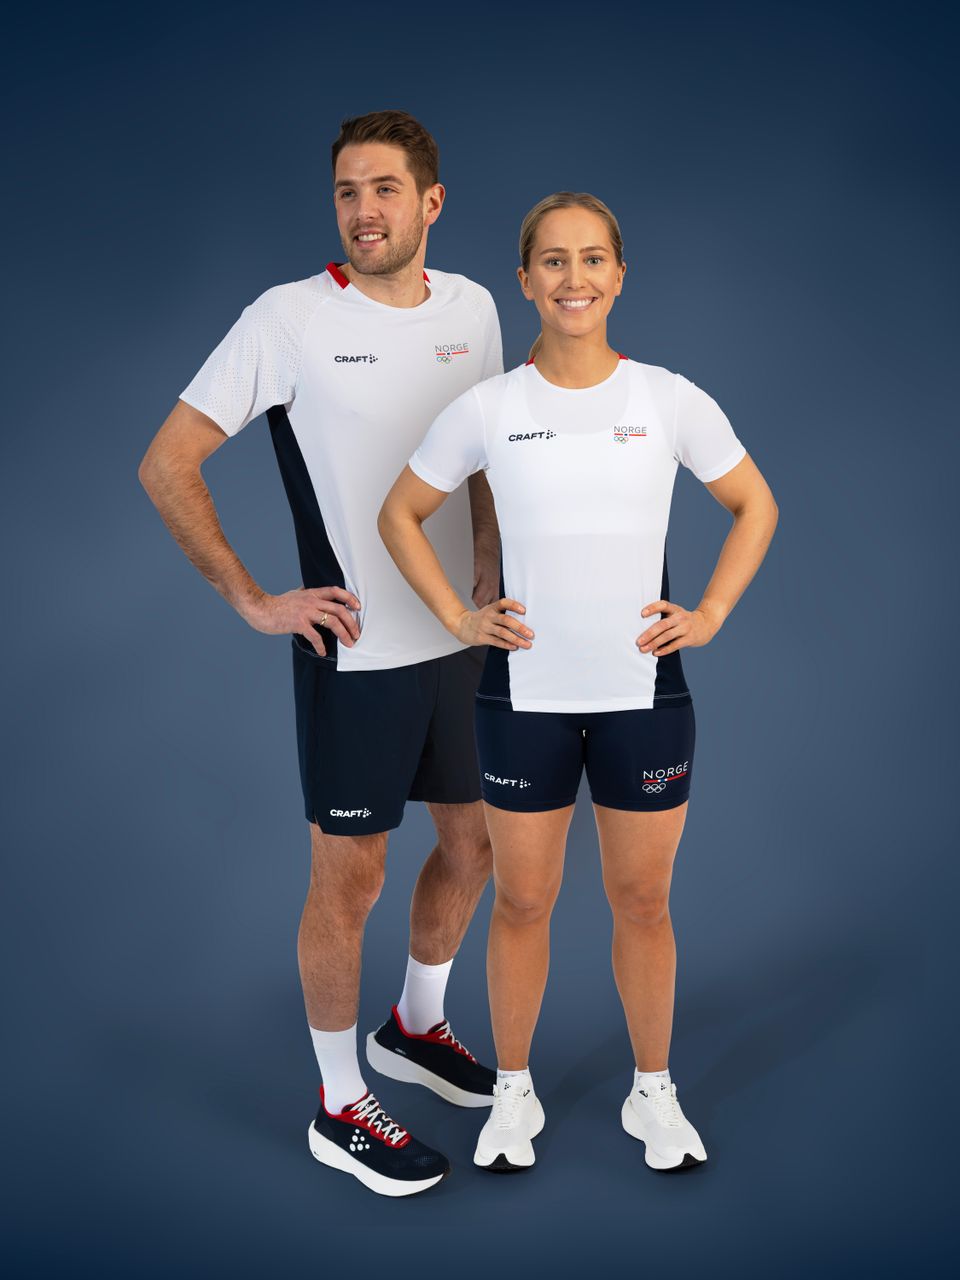 Et bilde av en mann og en dame kledd i hvite t-skjorter og blå shortser, som står med hendene på hoftene og smiler.